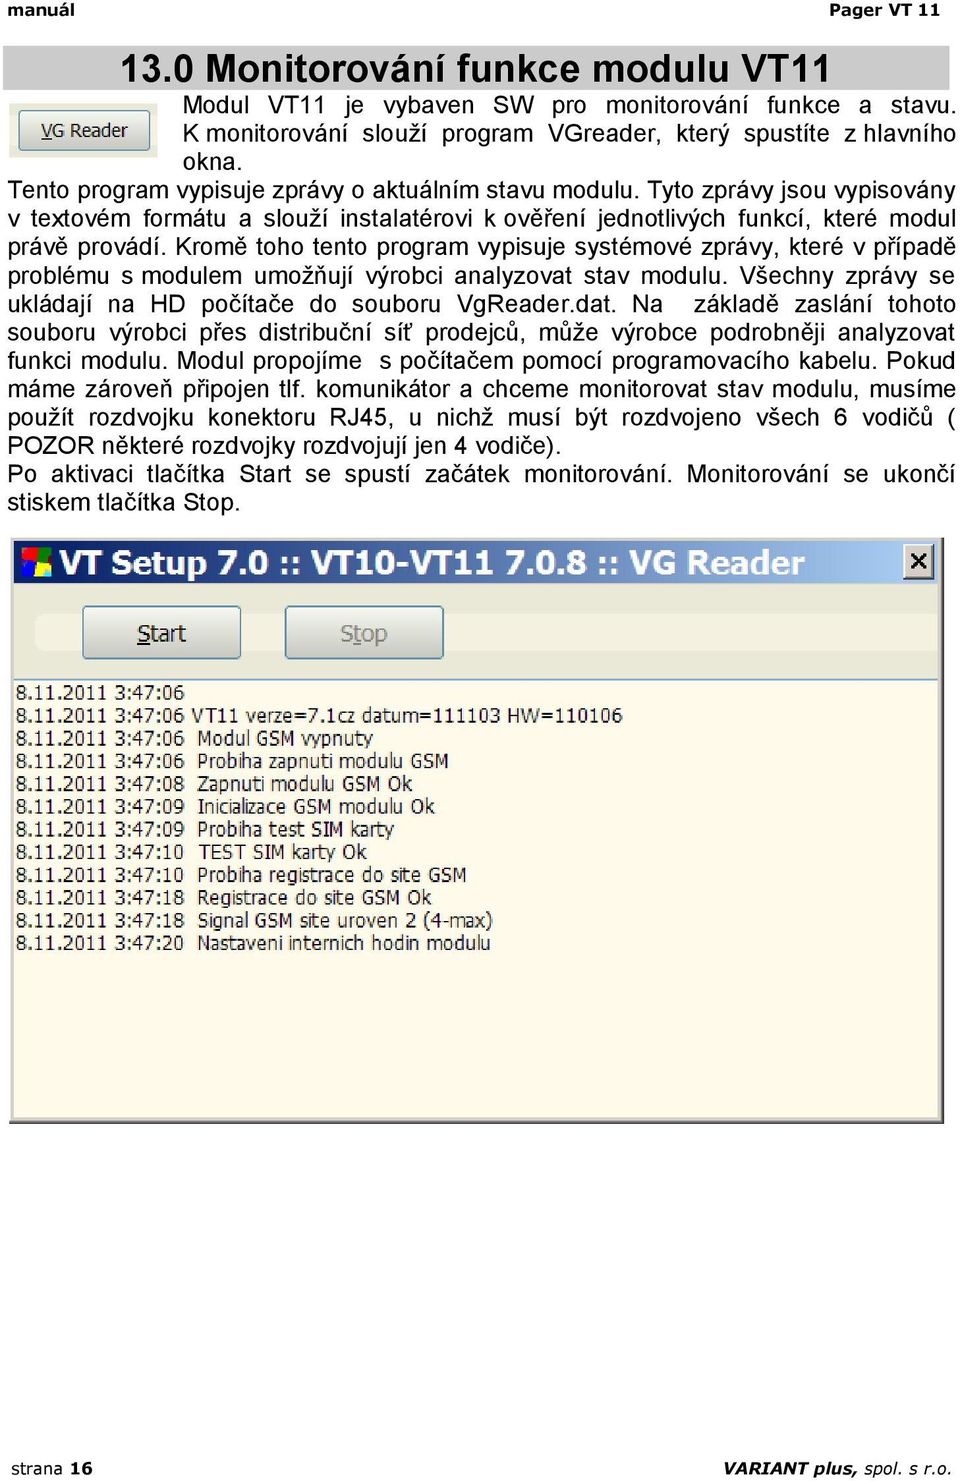 Kromě toho tento program vypisuje systémové zprávy, které v případě problému s modulem umožňují výrobci analyzovat stav modulu. Všechny zprávy se ukládají na HD počítače do souboru VgReader.dat.